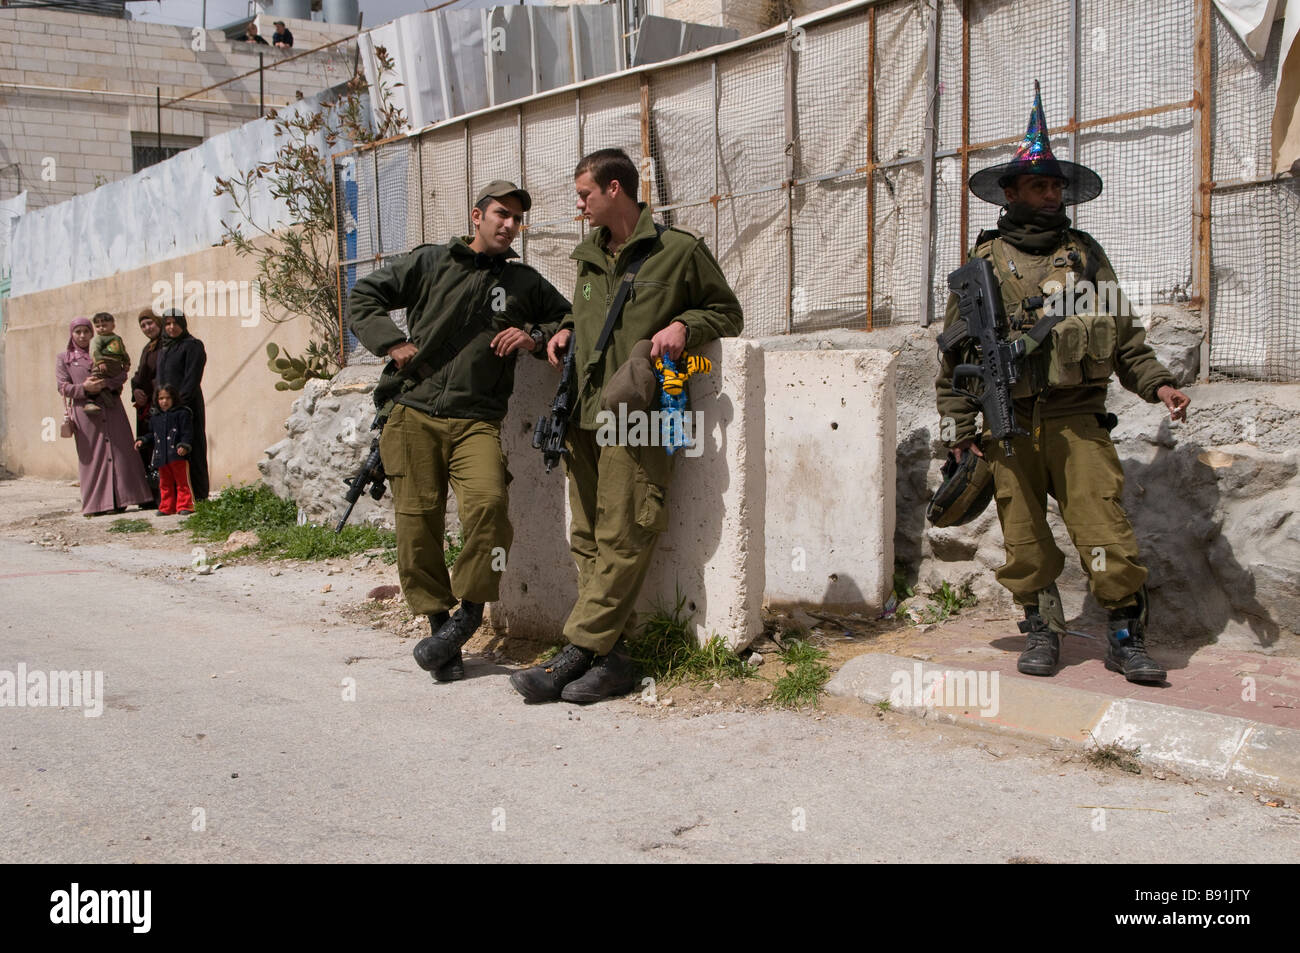 Soldat israélien portant un chapeau de clown lors de fête de Pourim dans la ville cisjordanienne de divise Hébron Israël Banque D'Images